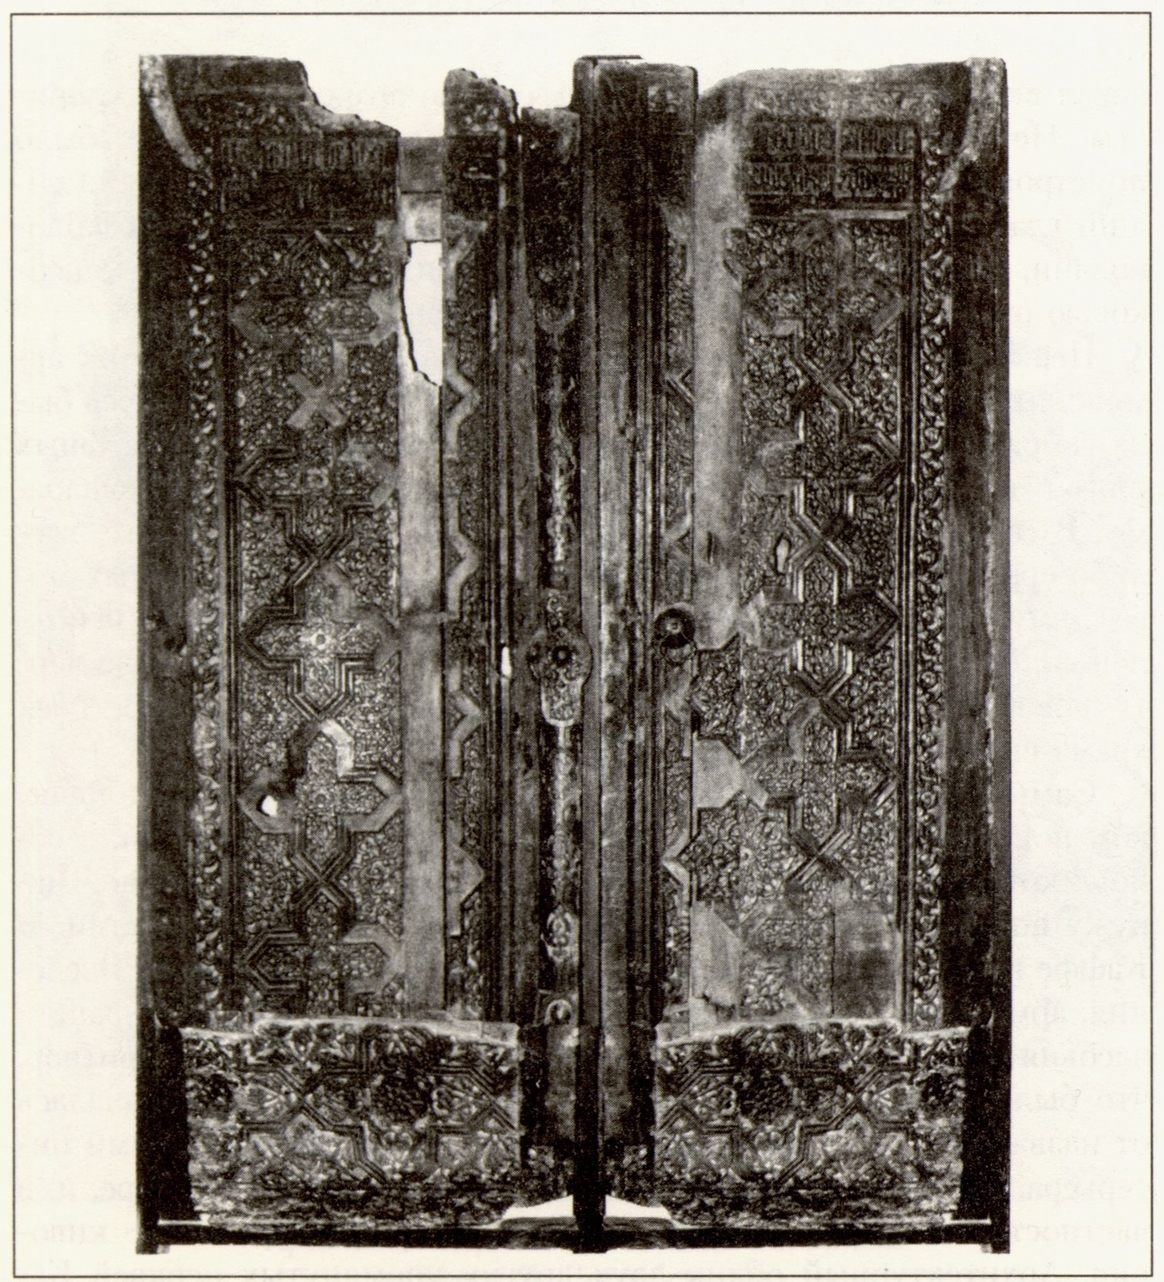 Резная деревянная дверь церкви св. Сергия. Фонды ФКМ